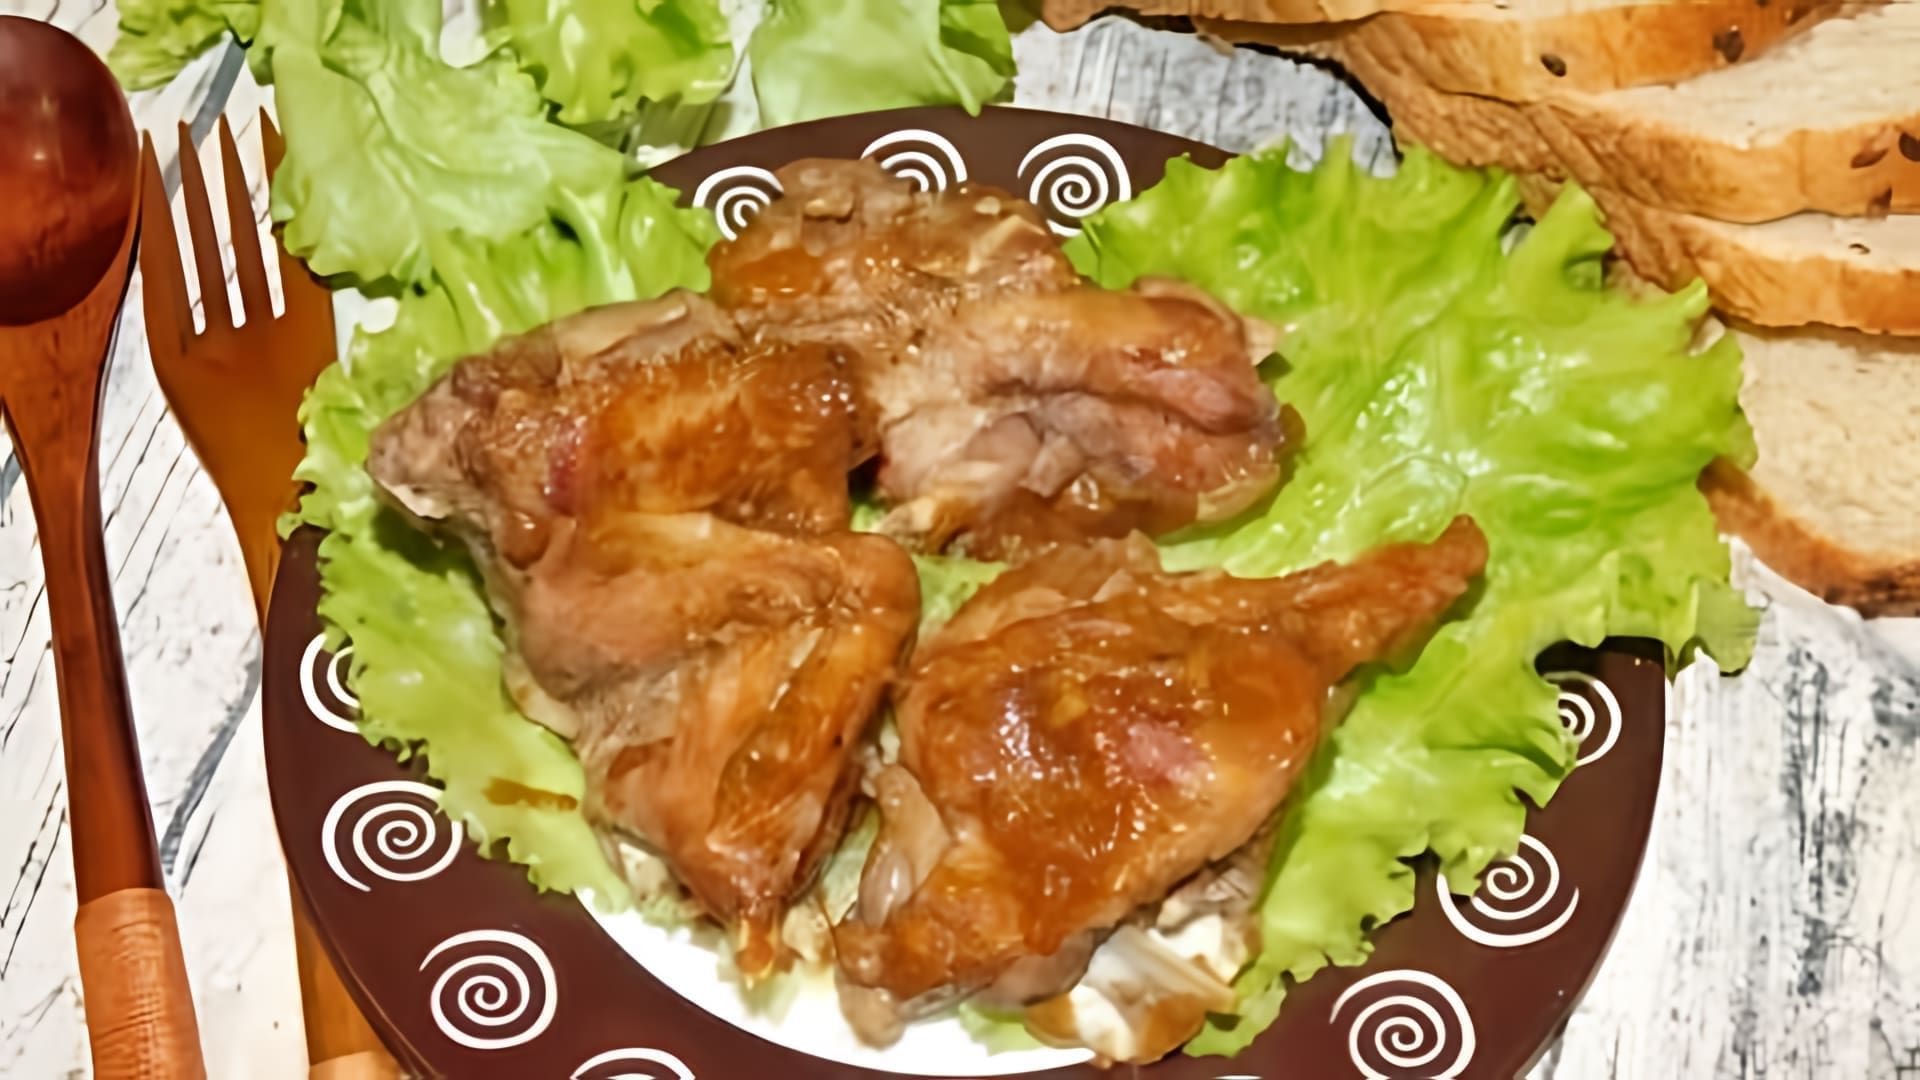 В этом видео демонстрируется рецепт приготовления мяса кролика по-китайски